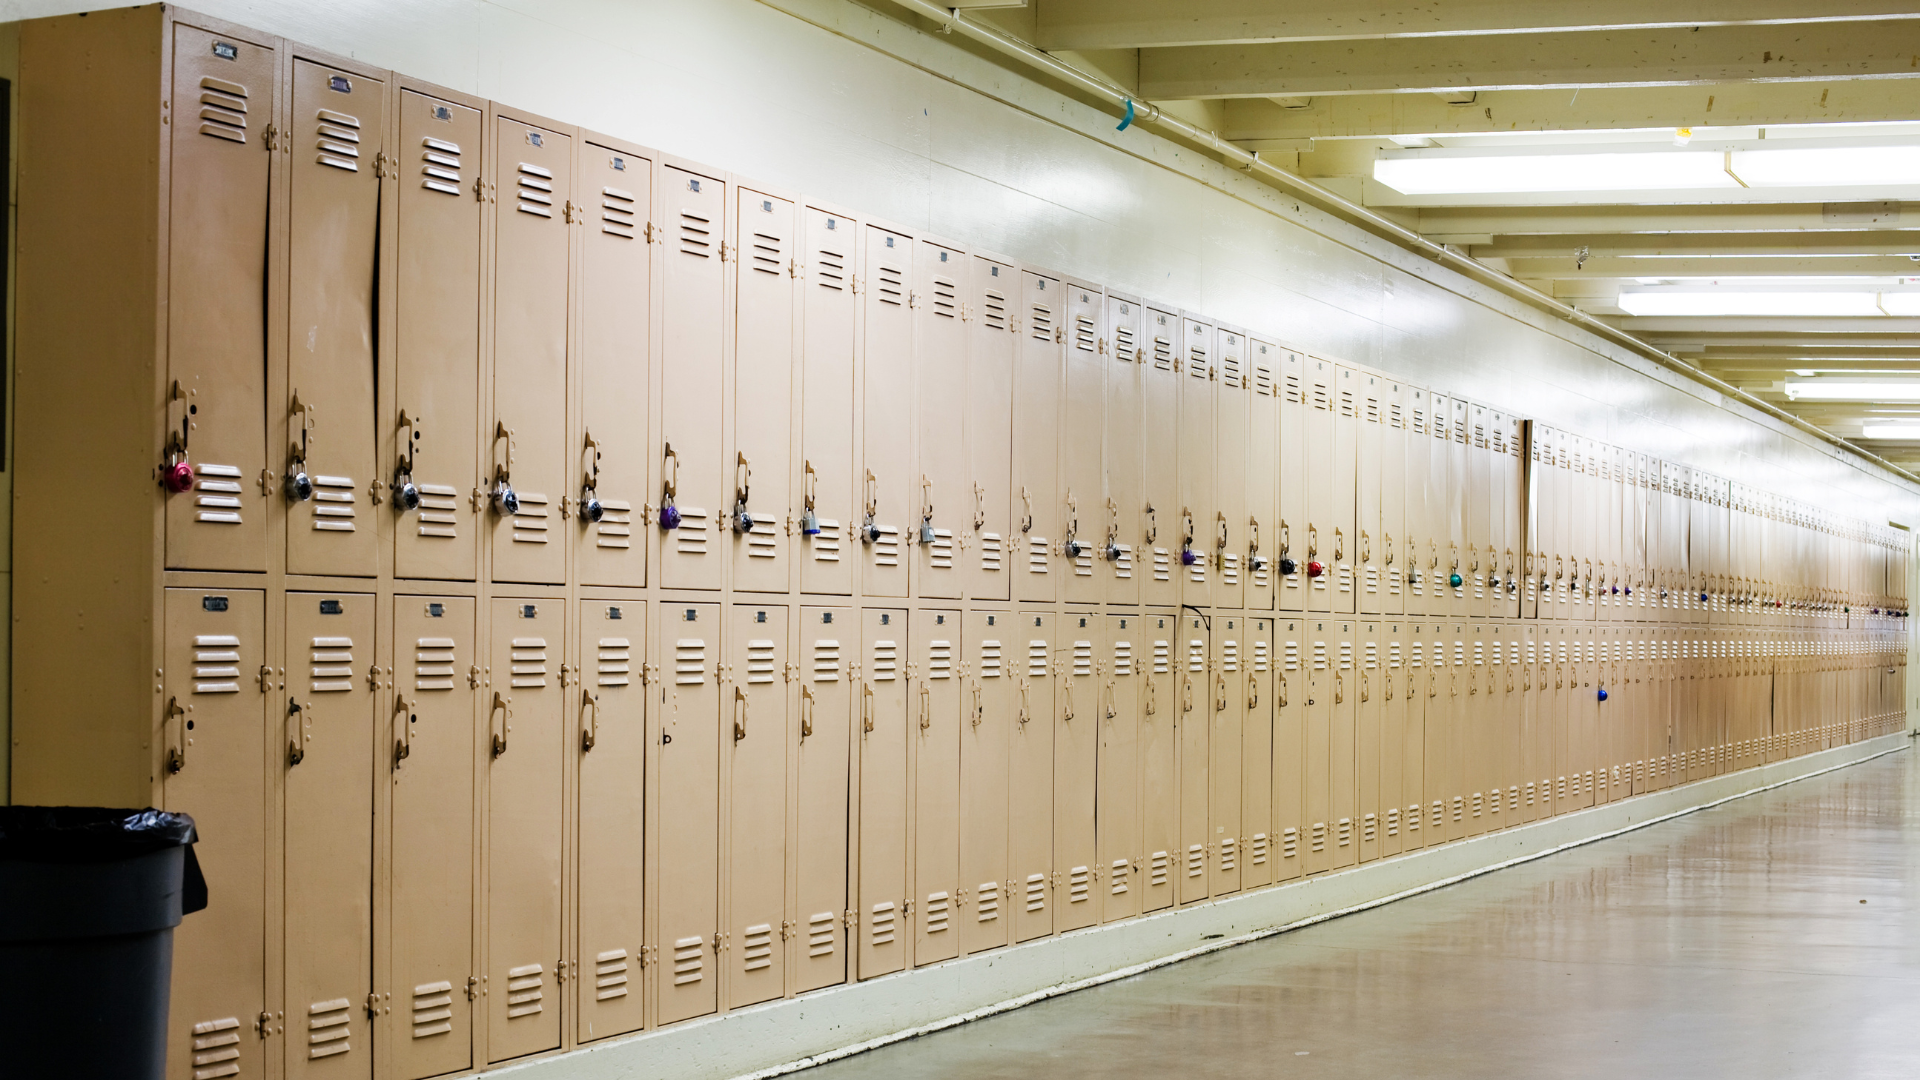 School lockers in a row